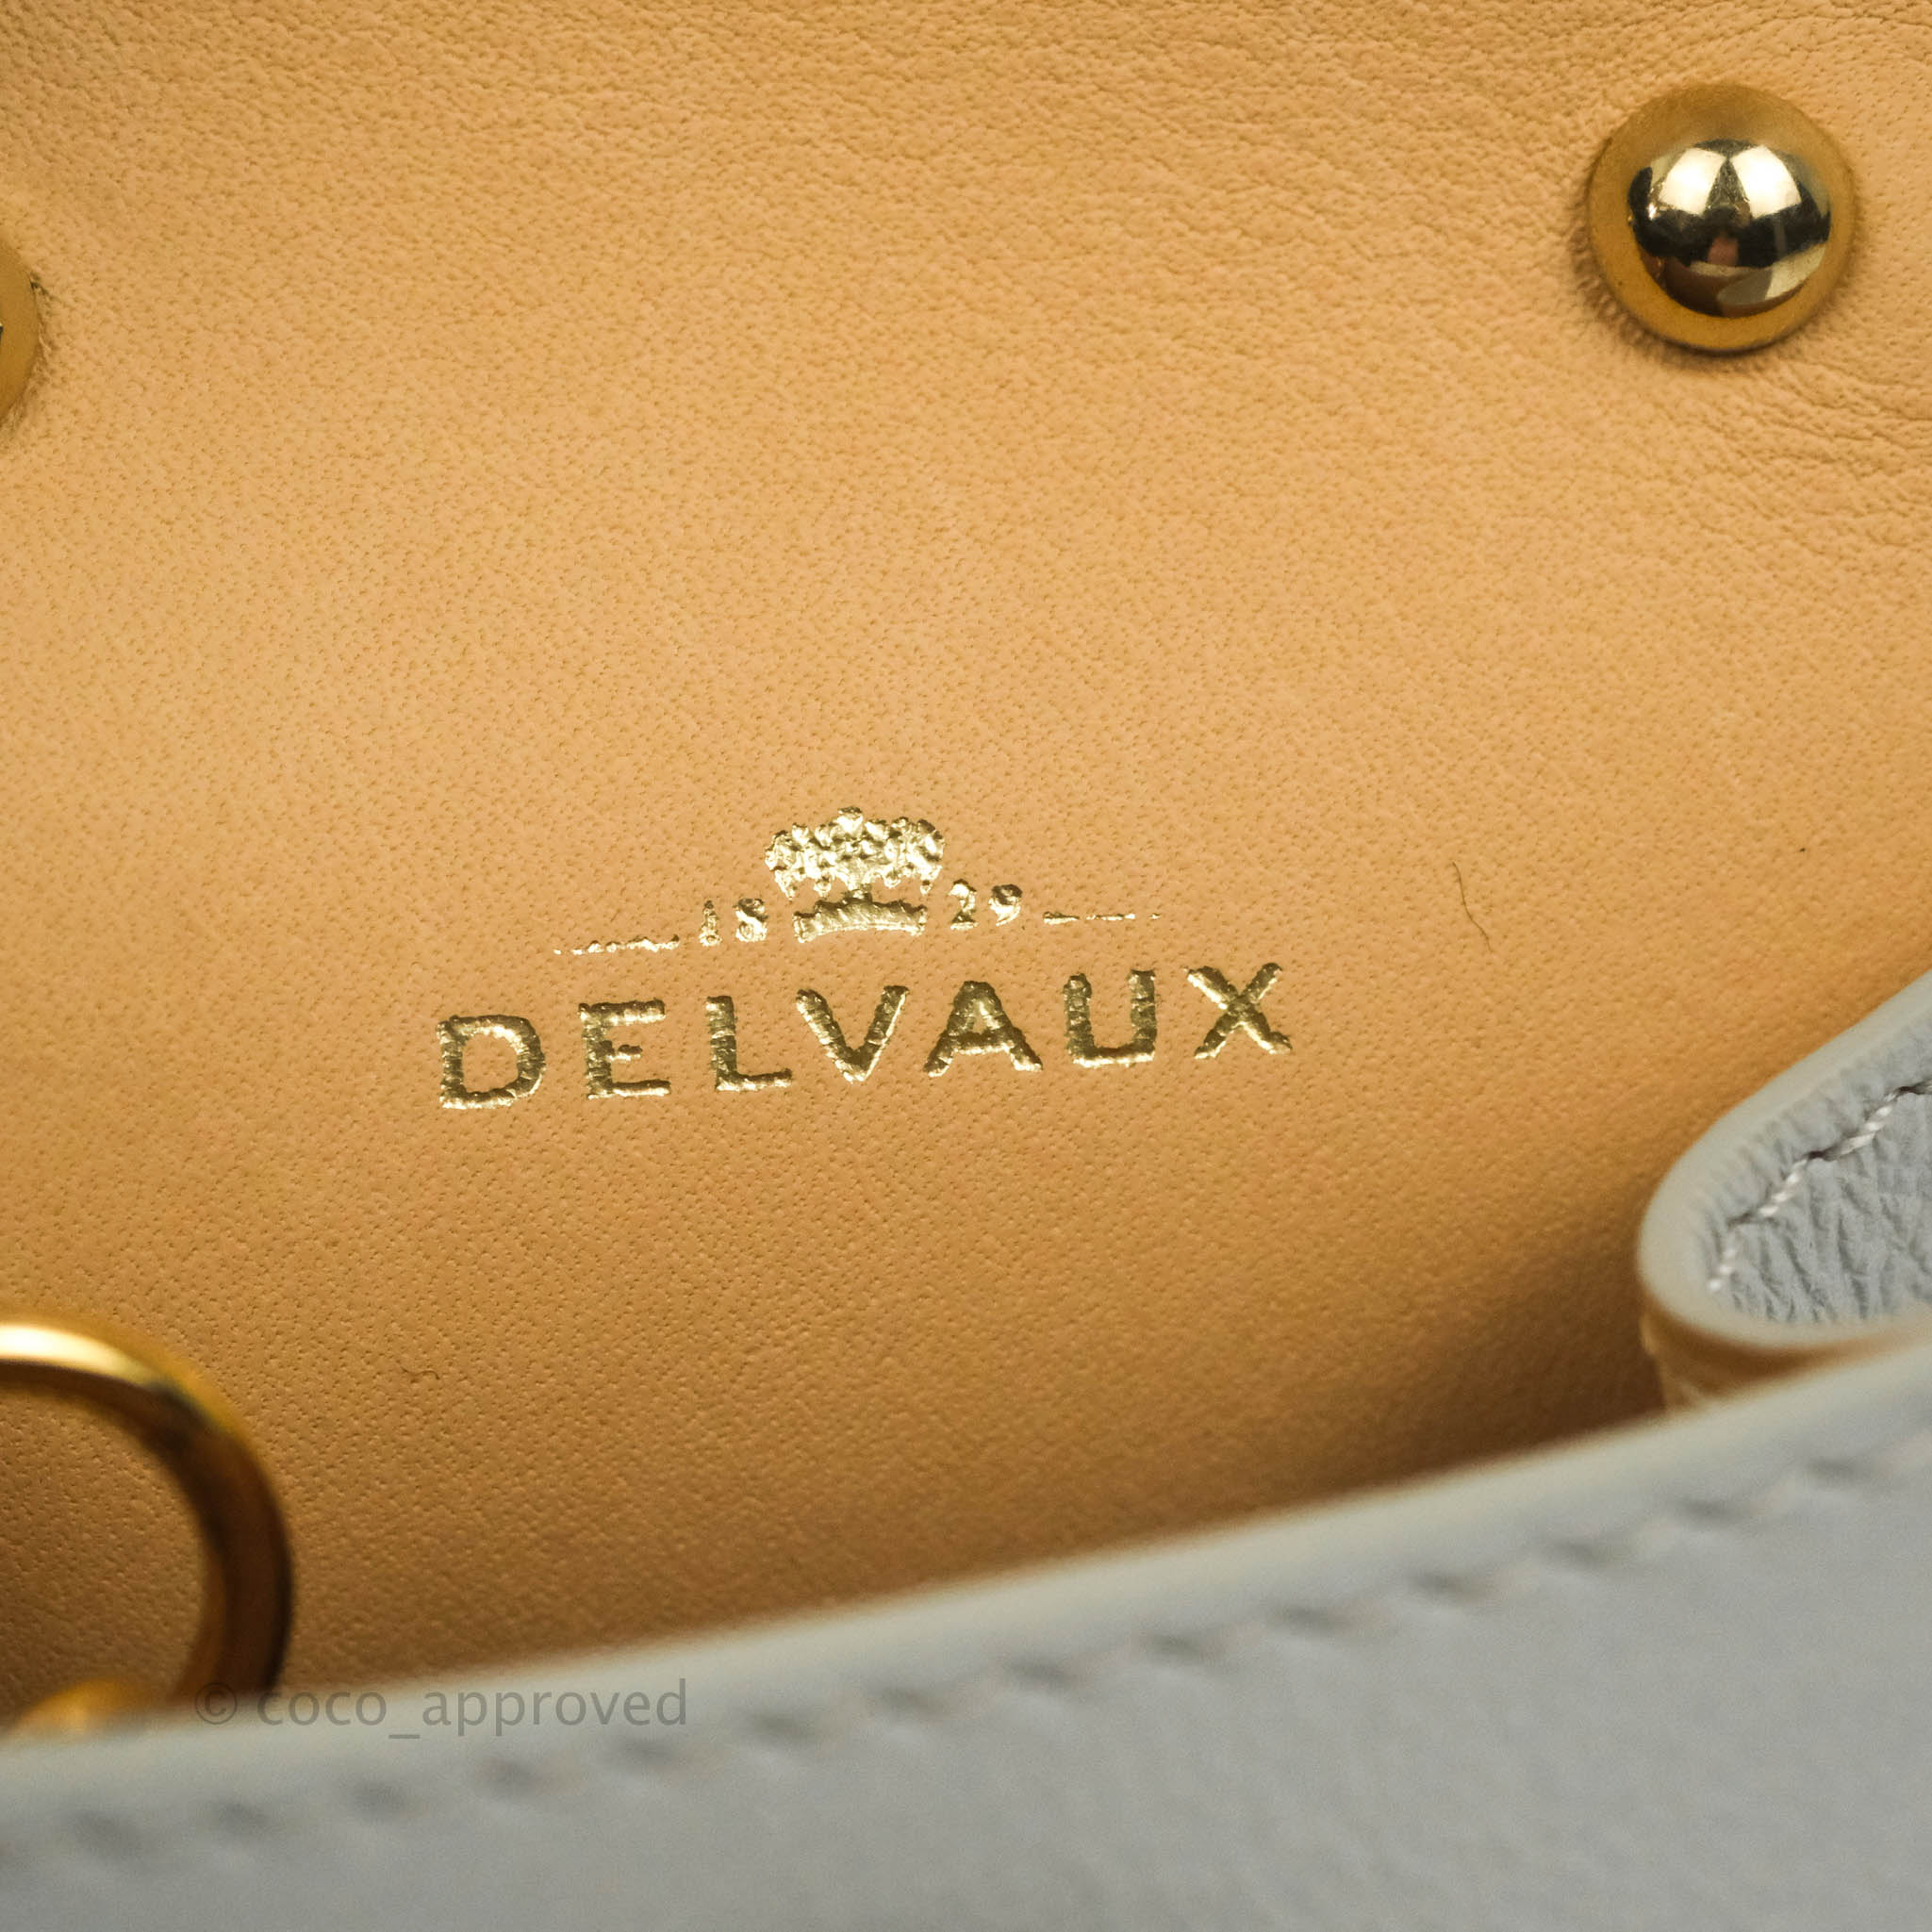 DELVAUX Bag 'Brillant' Mini 20cm in lipstick calfski…